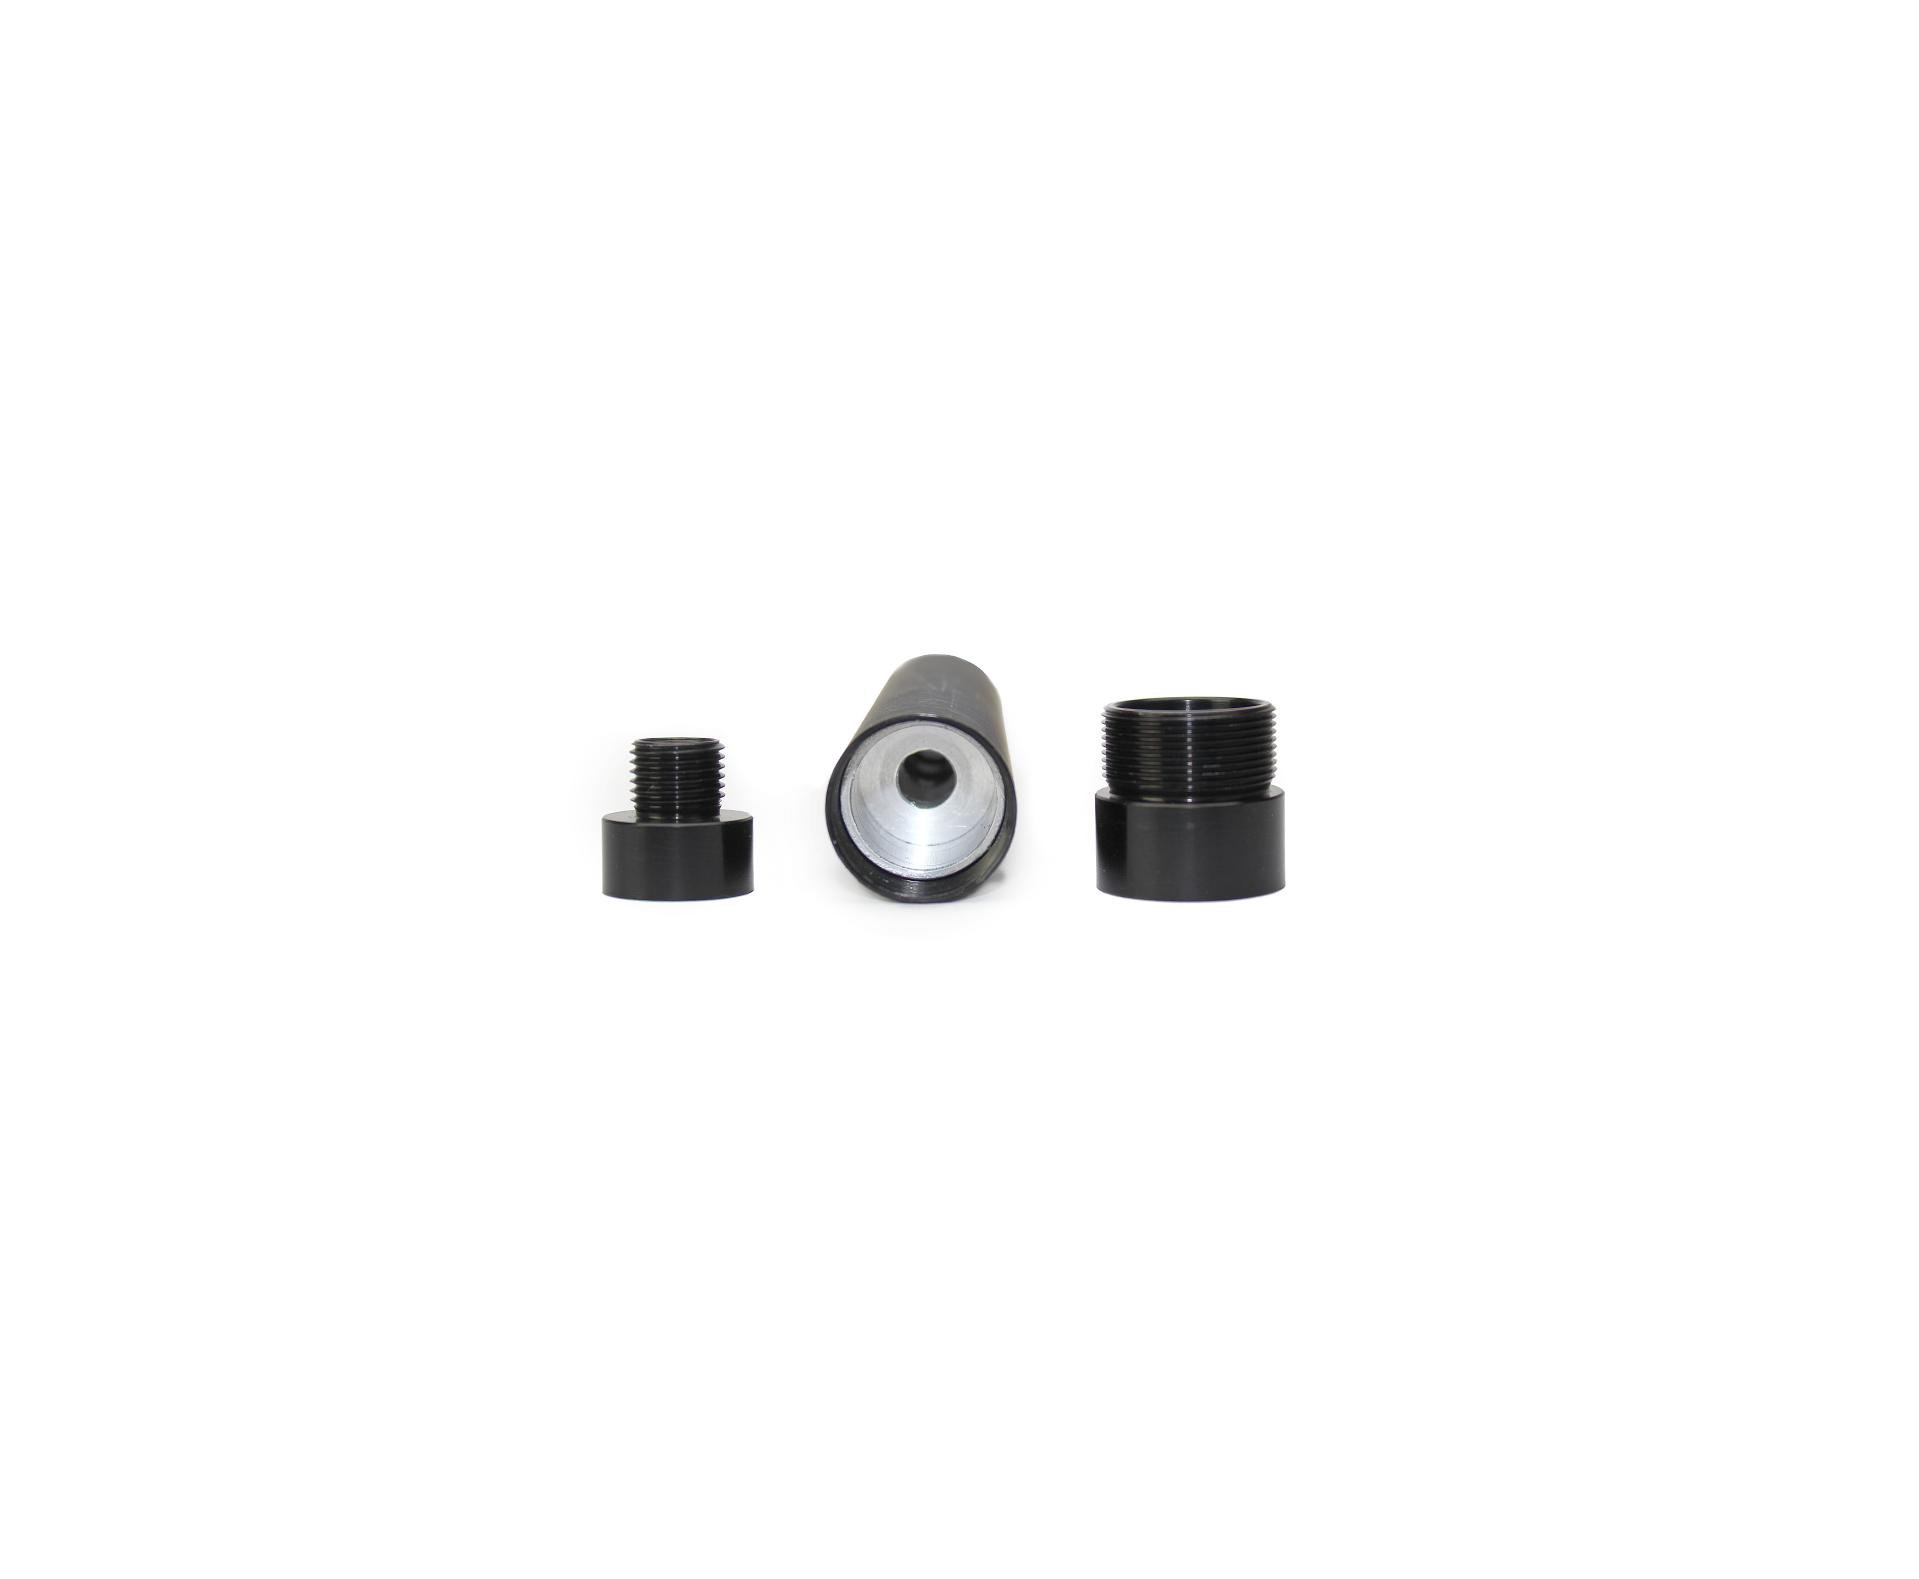 Muzzle Supressor 05 Câmeras Para Carabina Pressão 5.5 E 6.35 Rosca  ½” Unf 20 Fpp E M10 - QuickShot